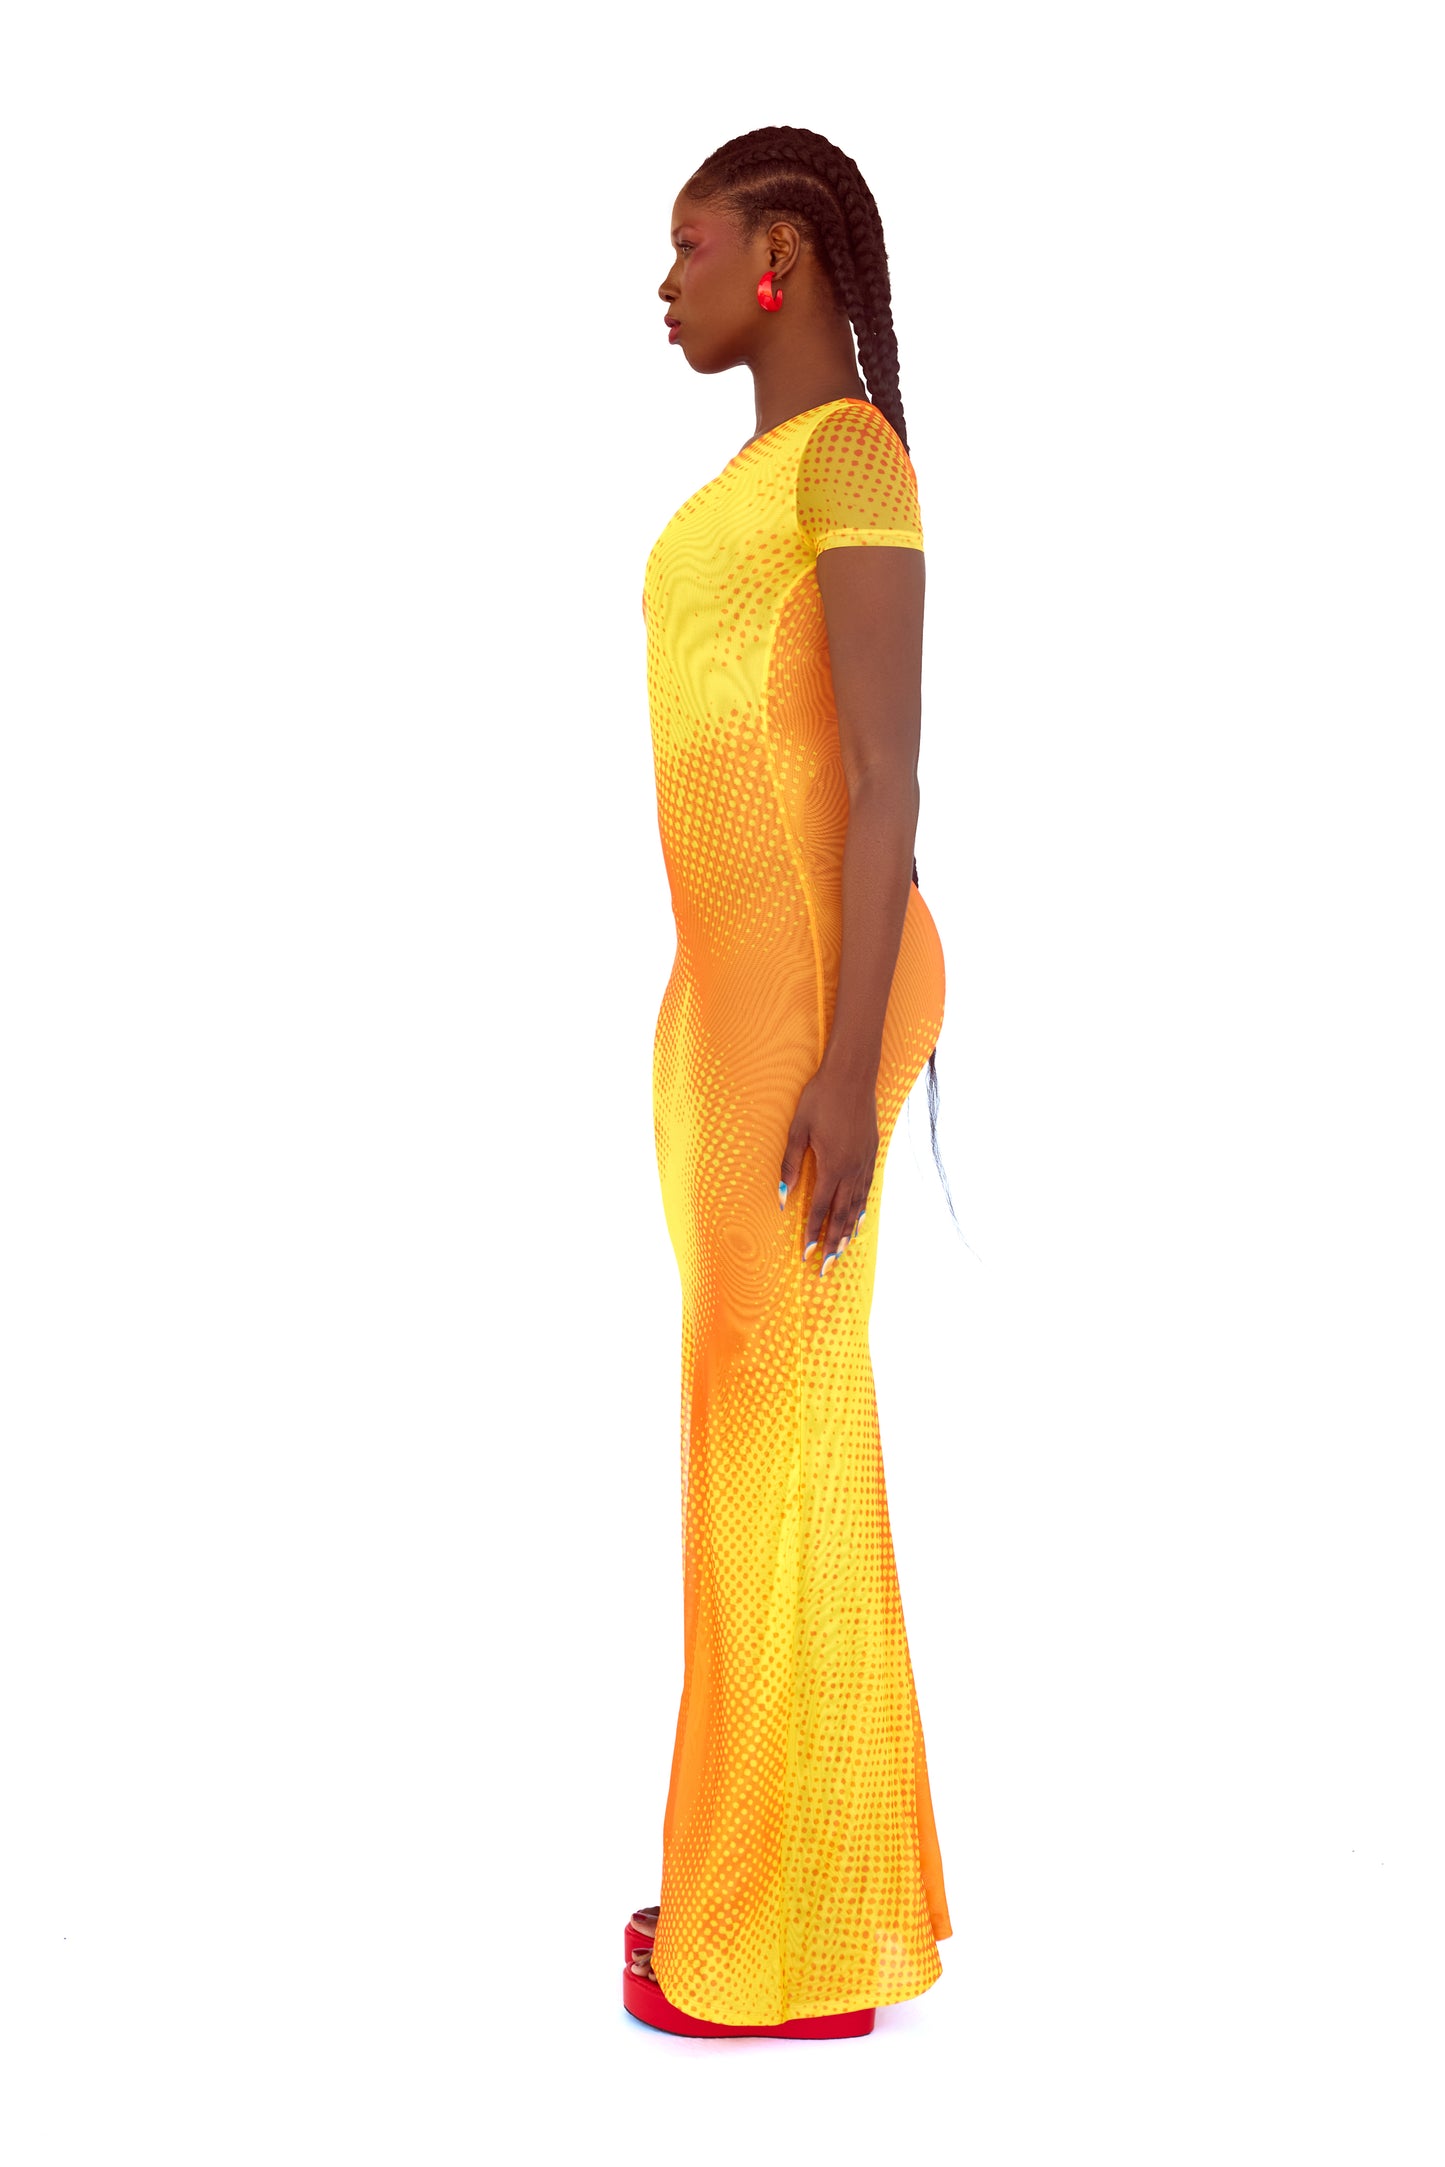 Model 1 wearing Solar Short Sleeve Dress, side view 1